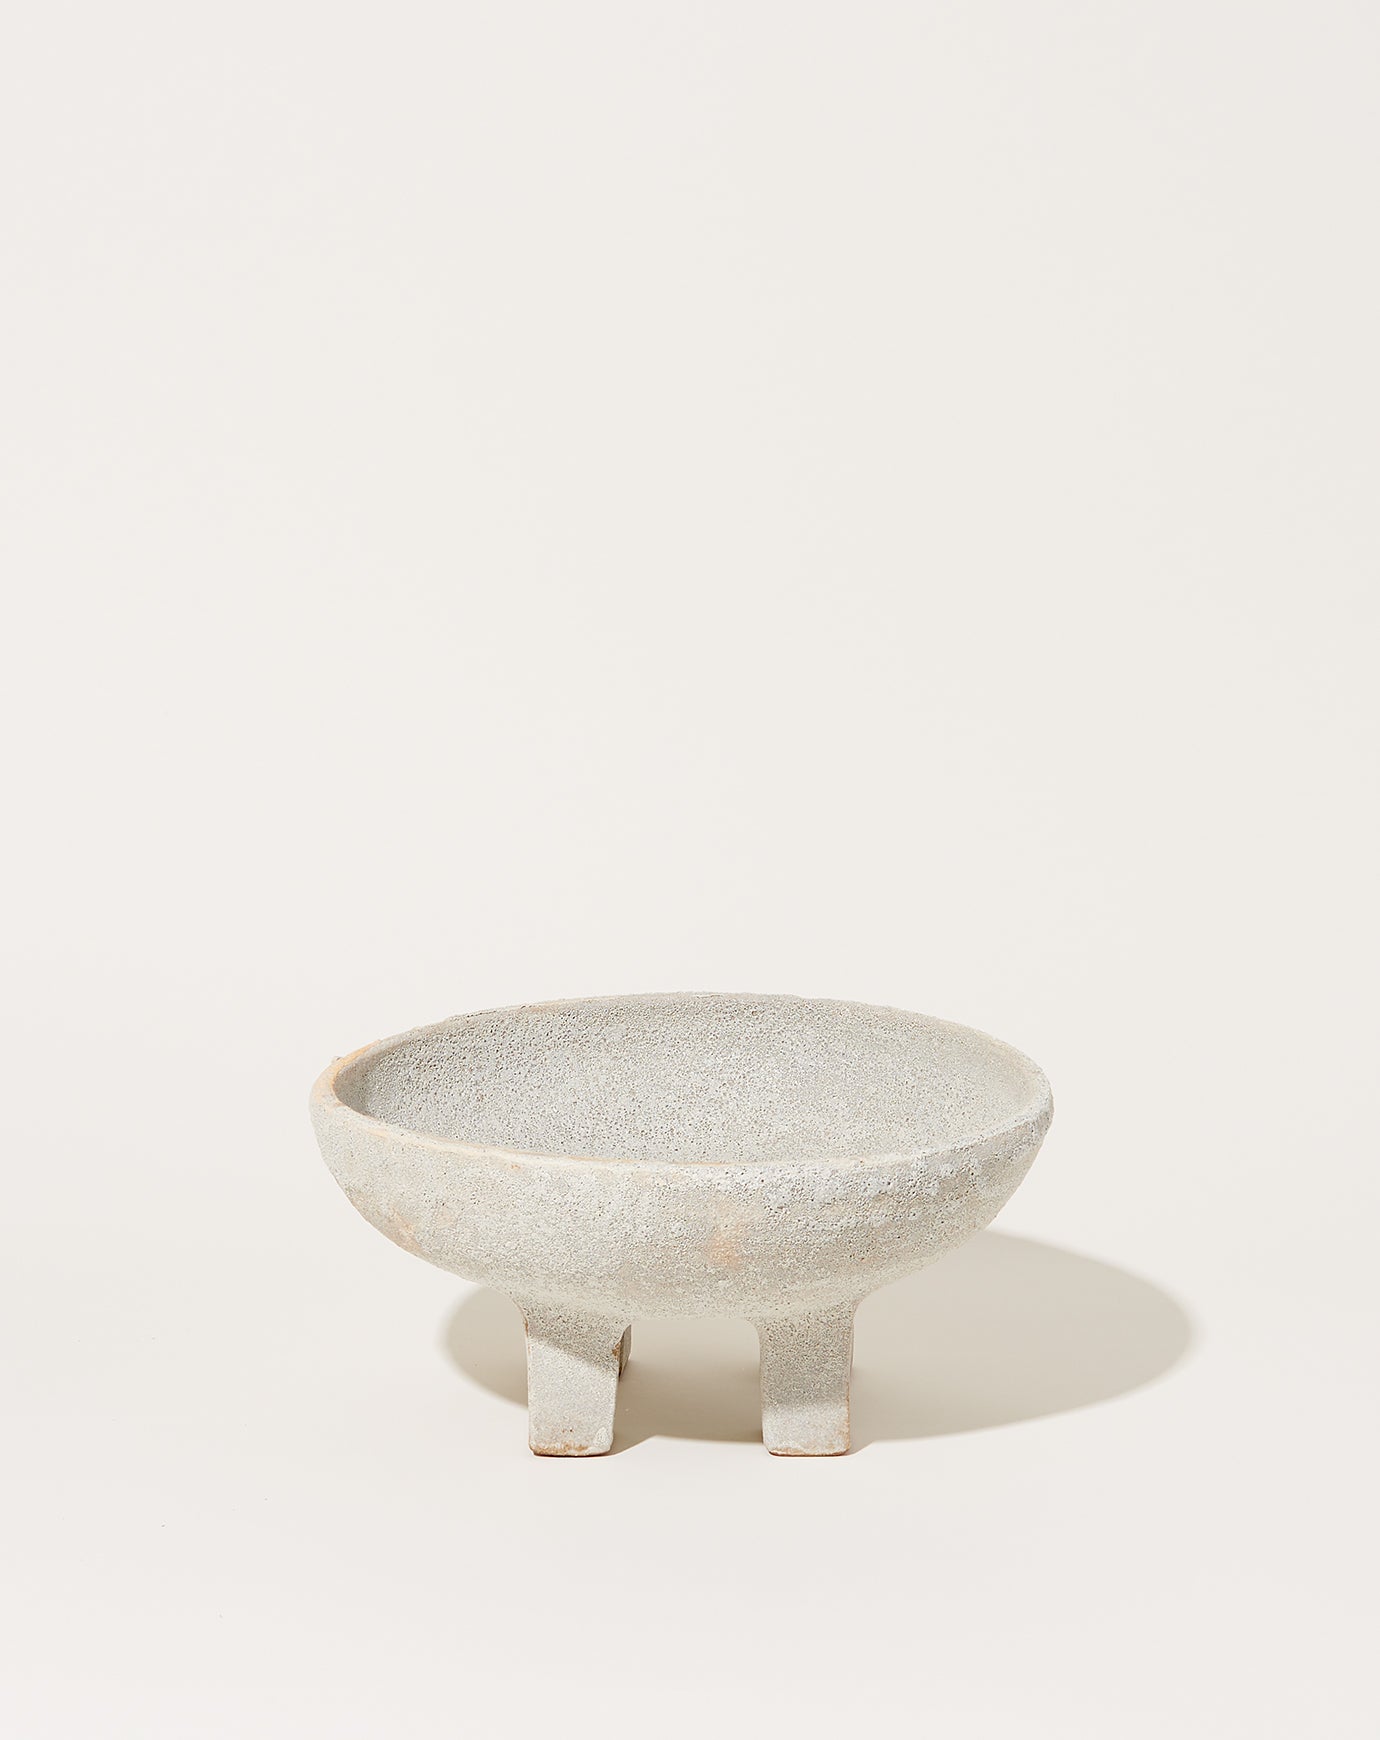 Nur Ceramics Large Ritual Bowl in Volcanic White